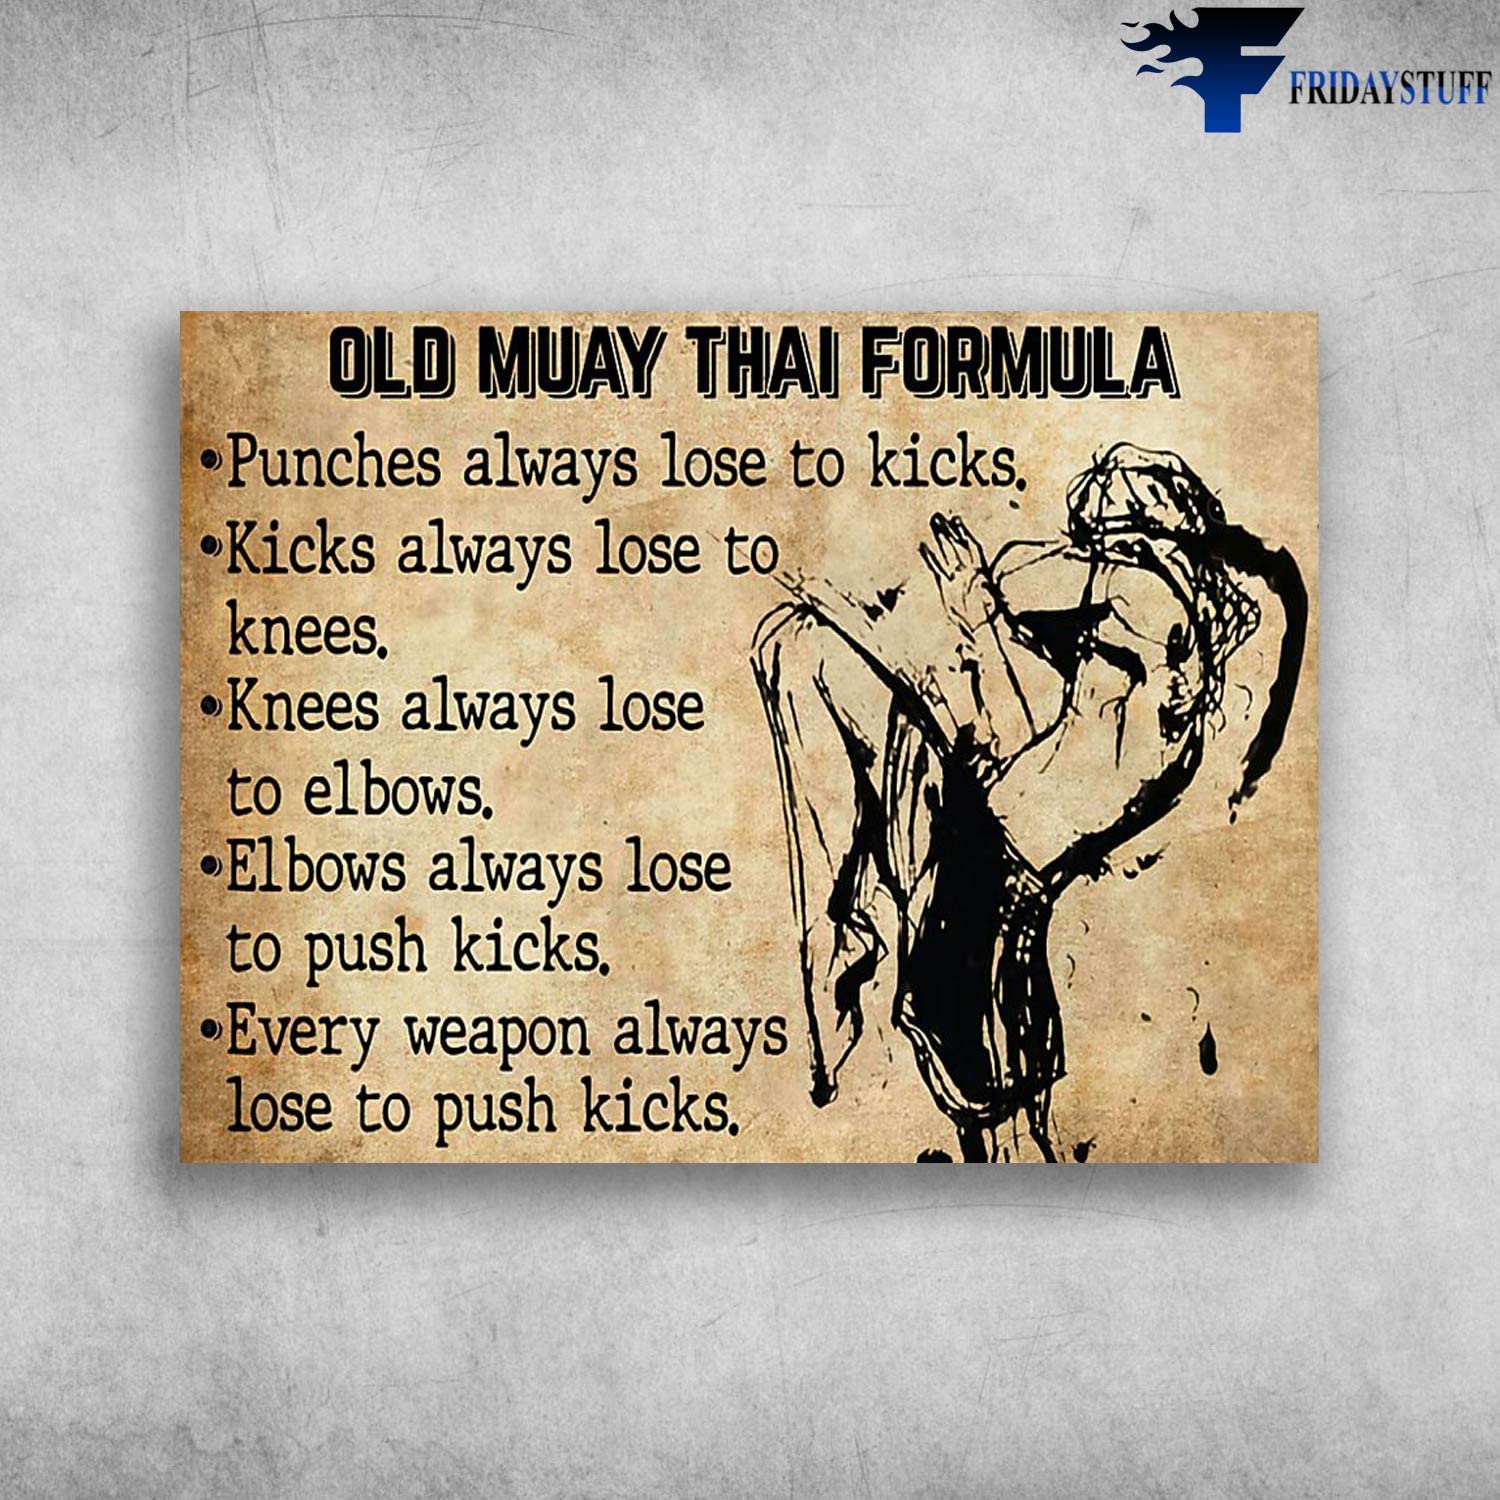 Old Muay Thai Formula Elbows Always Lose To Push Kicks